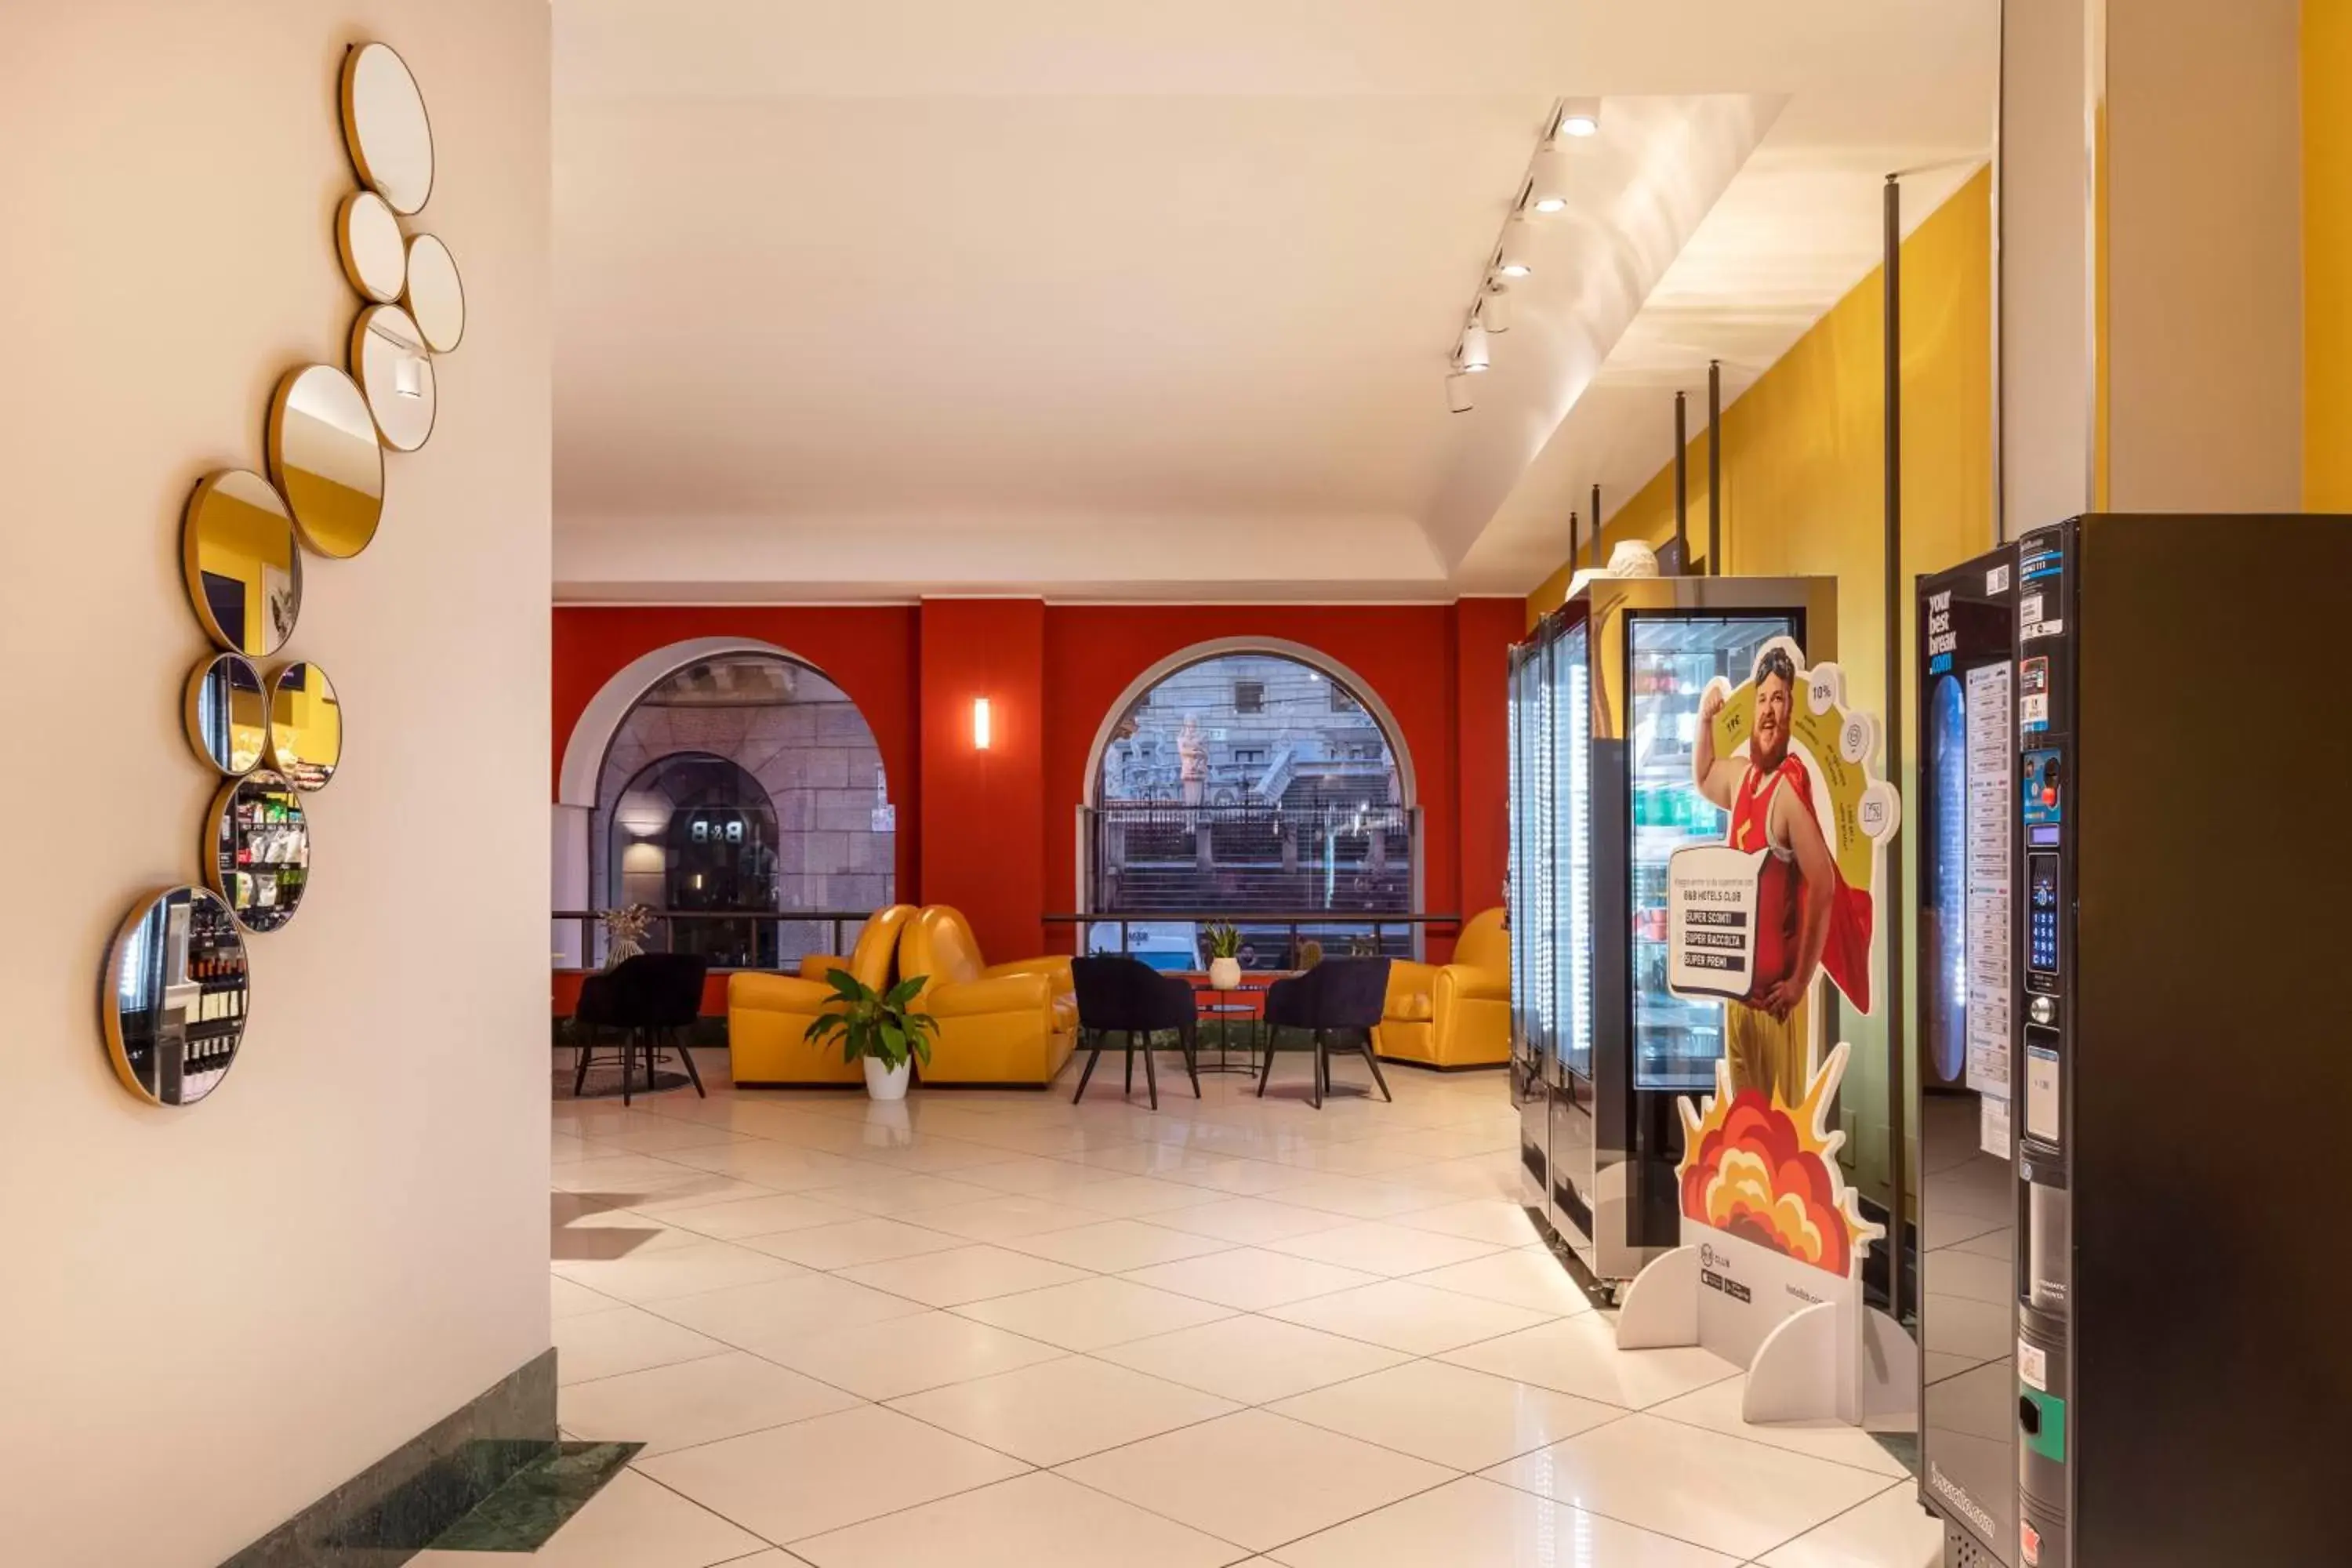 Lobby or reception in B&B Hotel Palermo Quattro Canti